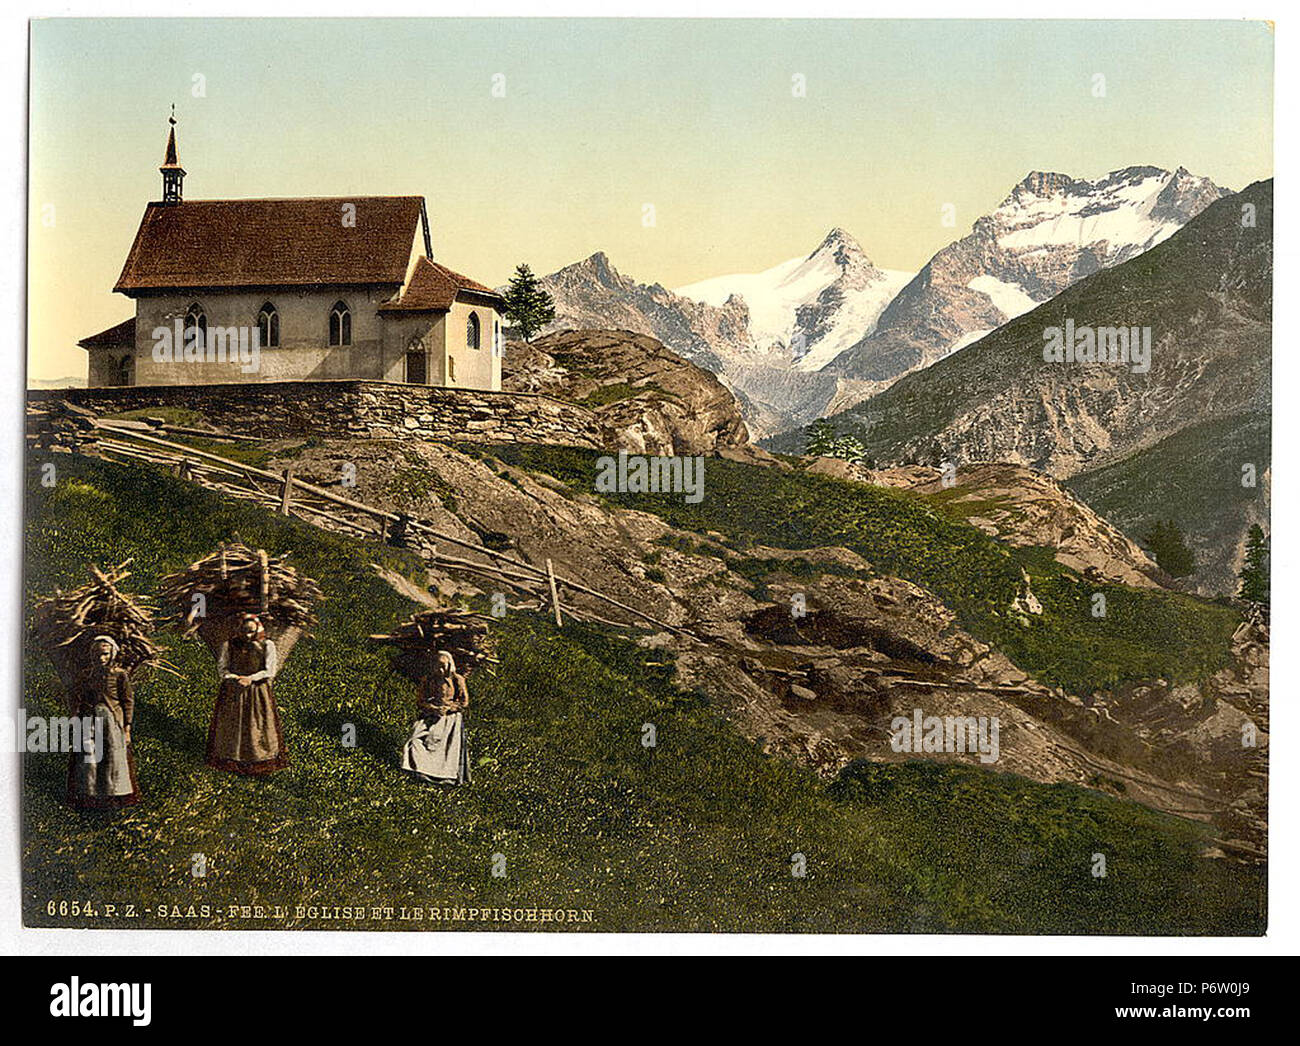 Foto d'epoca di contadini che lavora davanti ad una vecchia cappella edificio situato sulla cima di una collina in una regione montagnosa Foto Stock